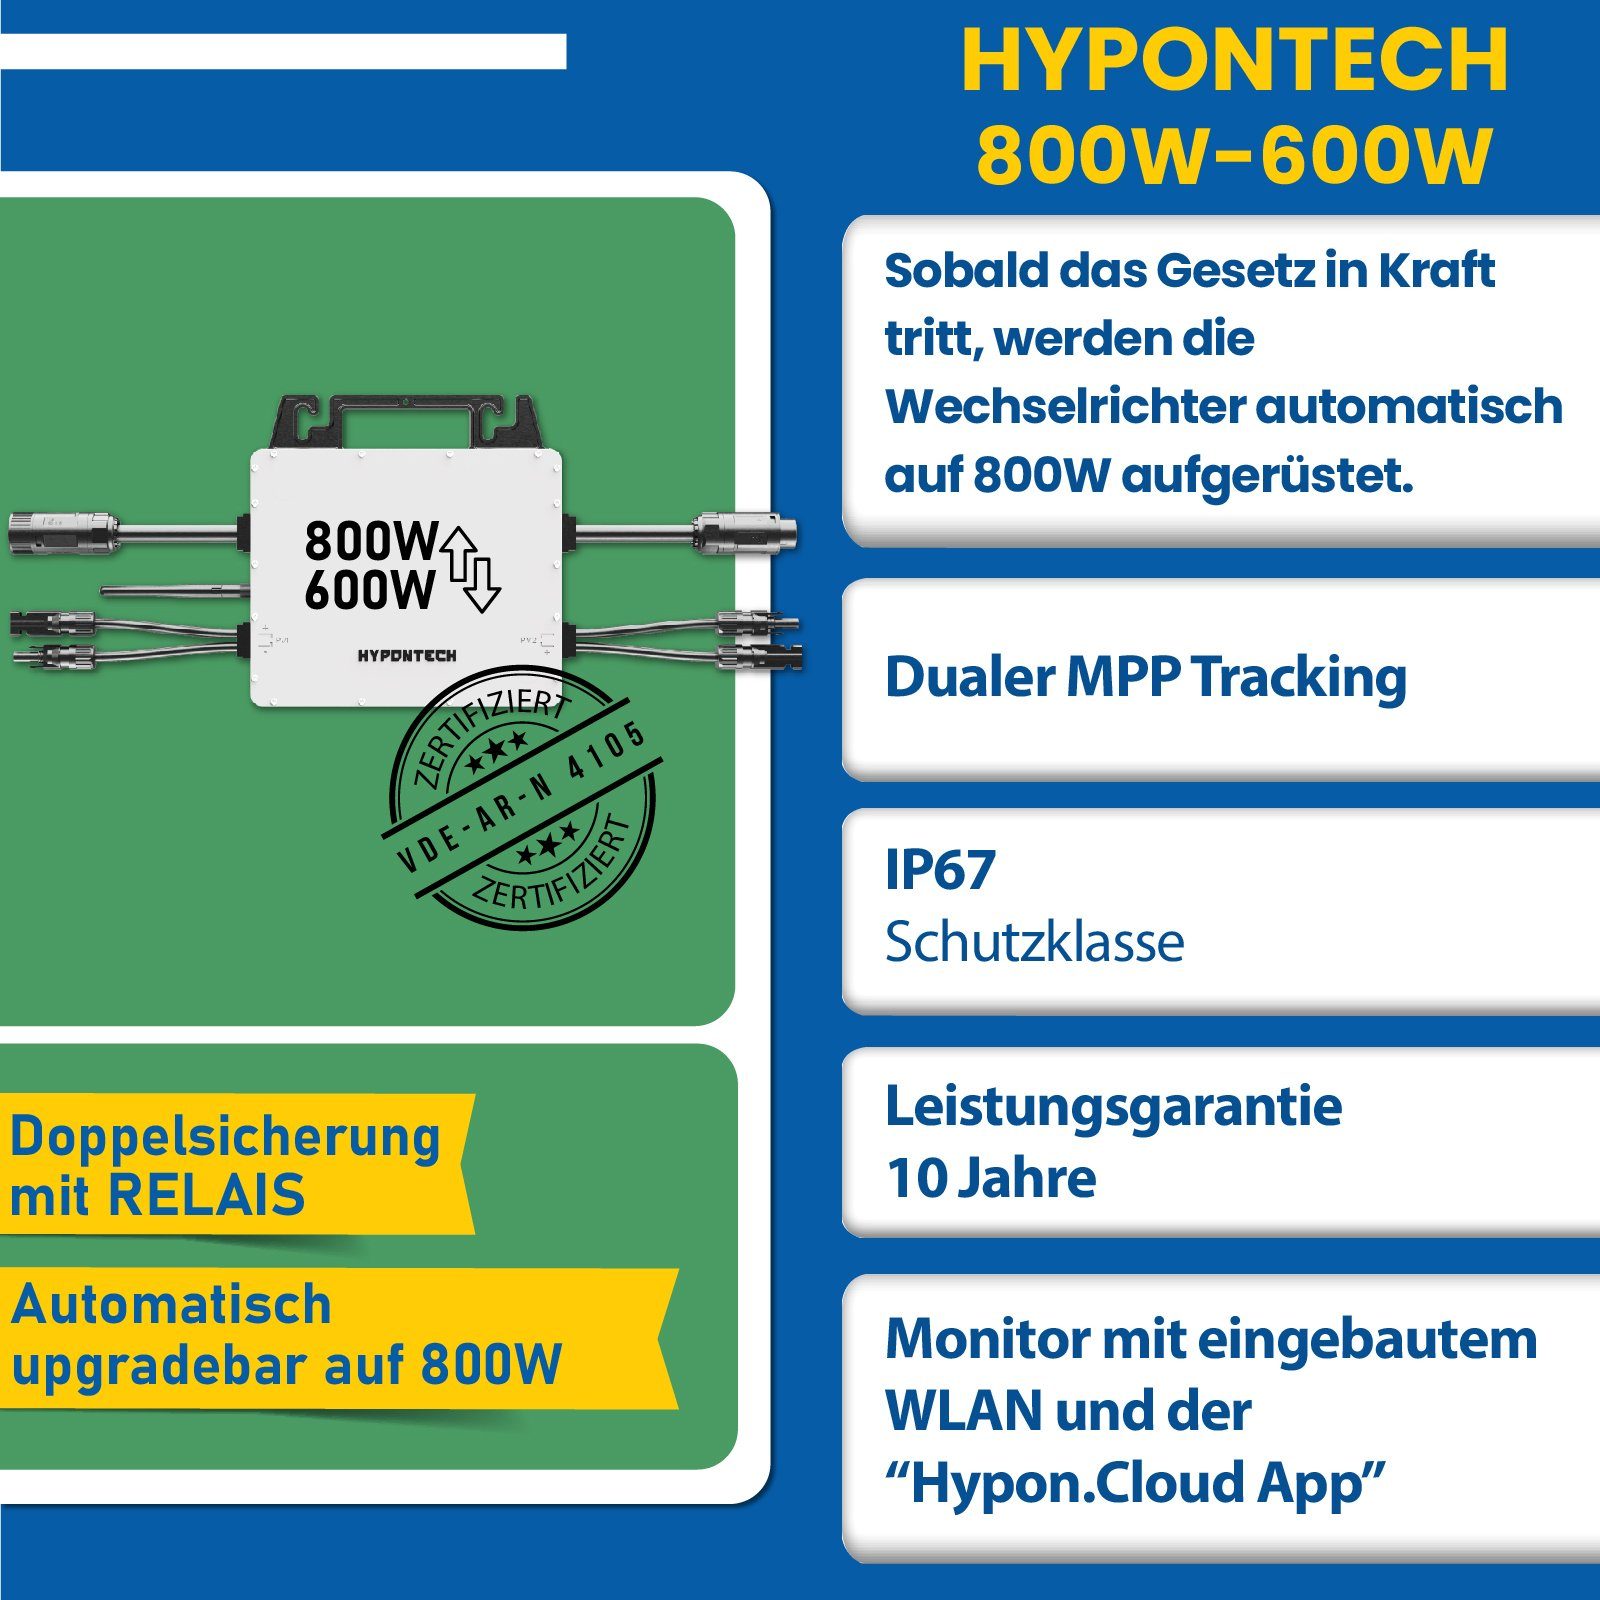 Ziegeldach PV-Montage, Hypontech WIFI Upgradefähiger Wechselrichter 800W Solaranlage Mit 830W Halterung, Balkonkraftwerk, Photovoltaik EPP.Solar